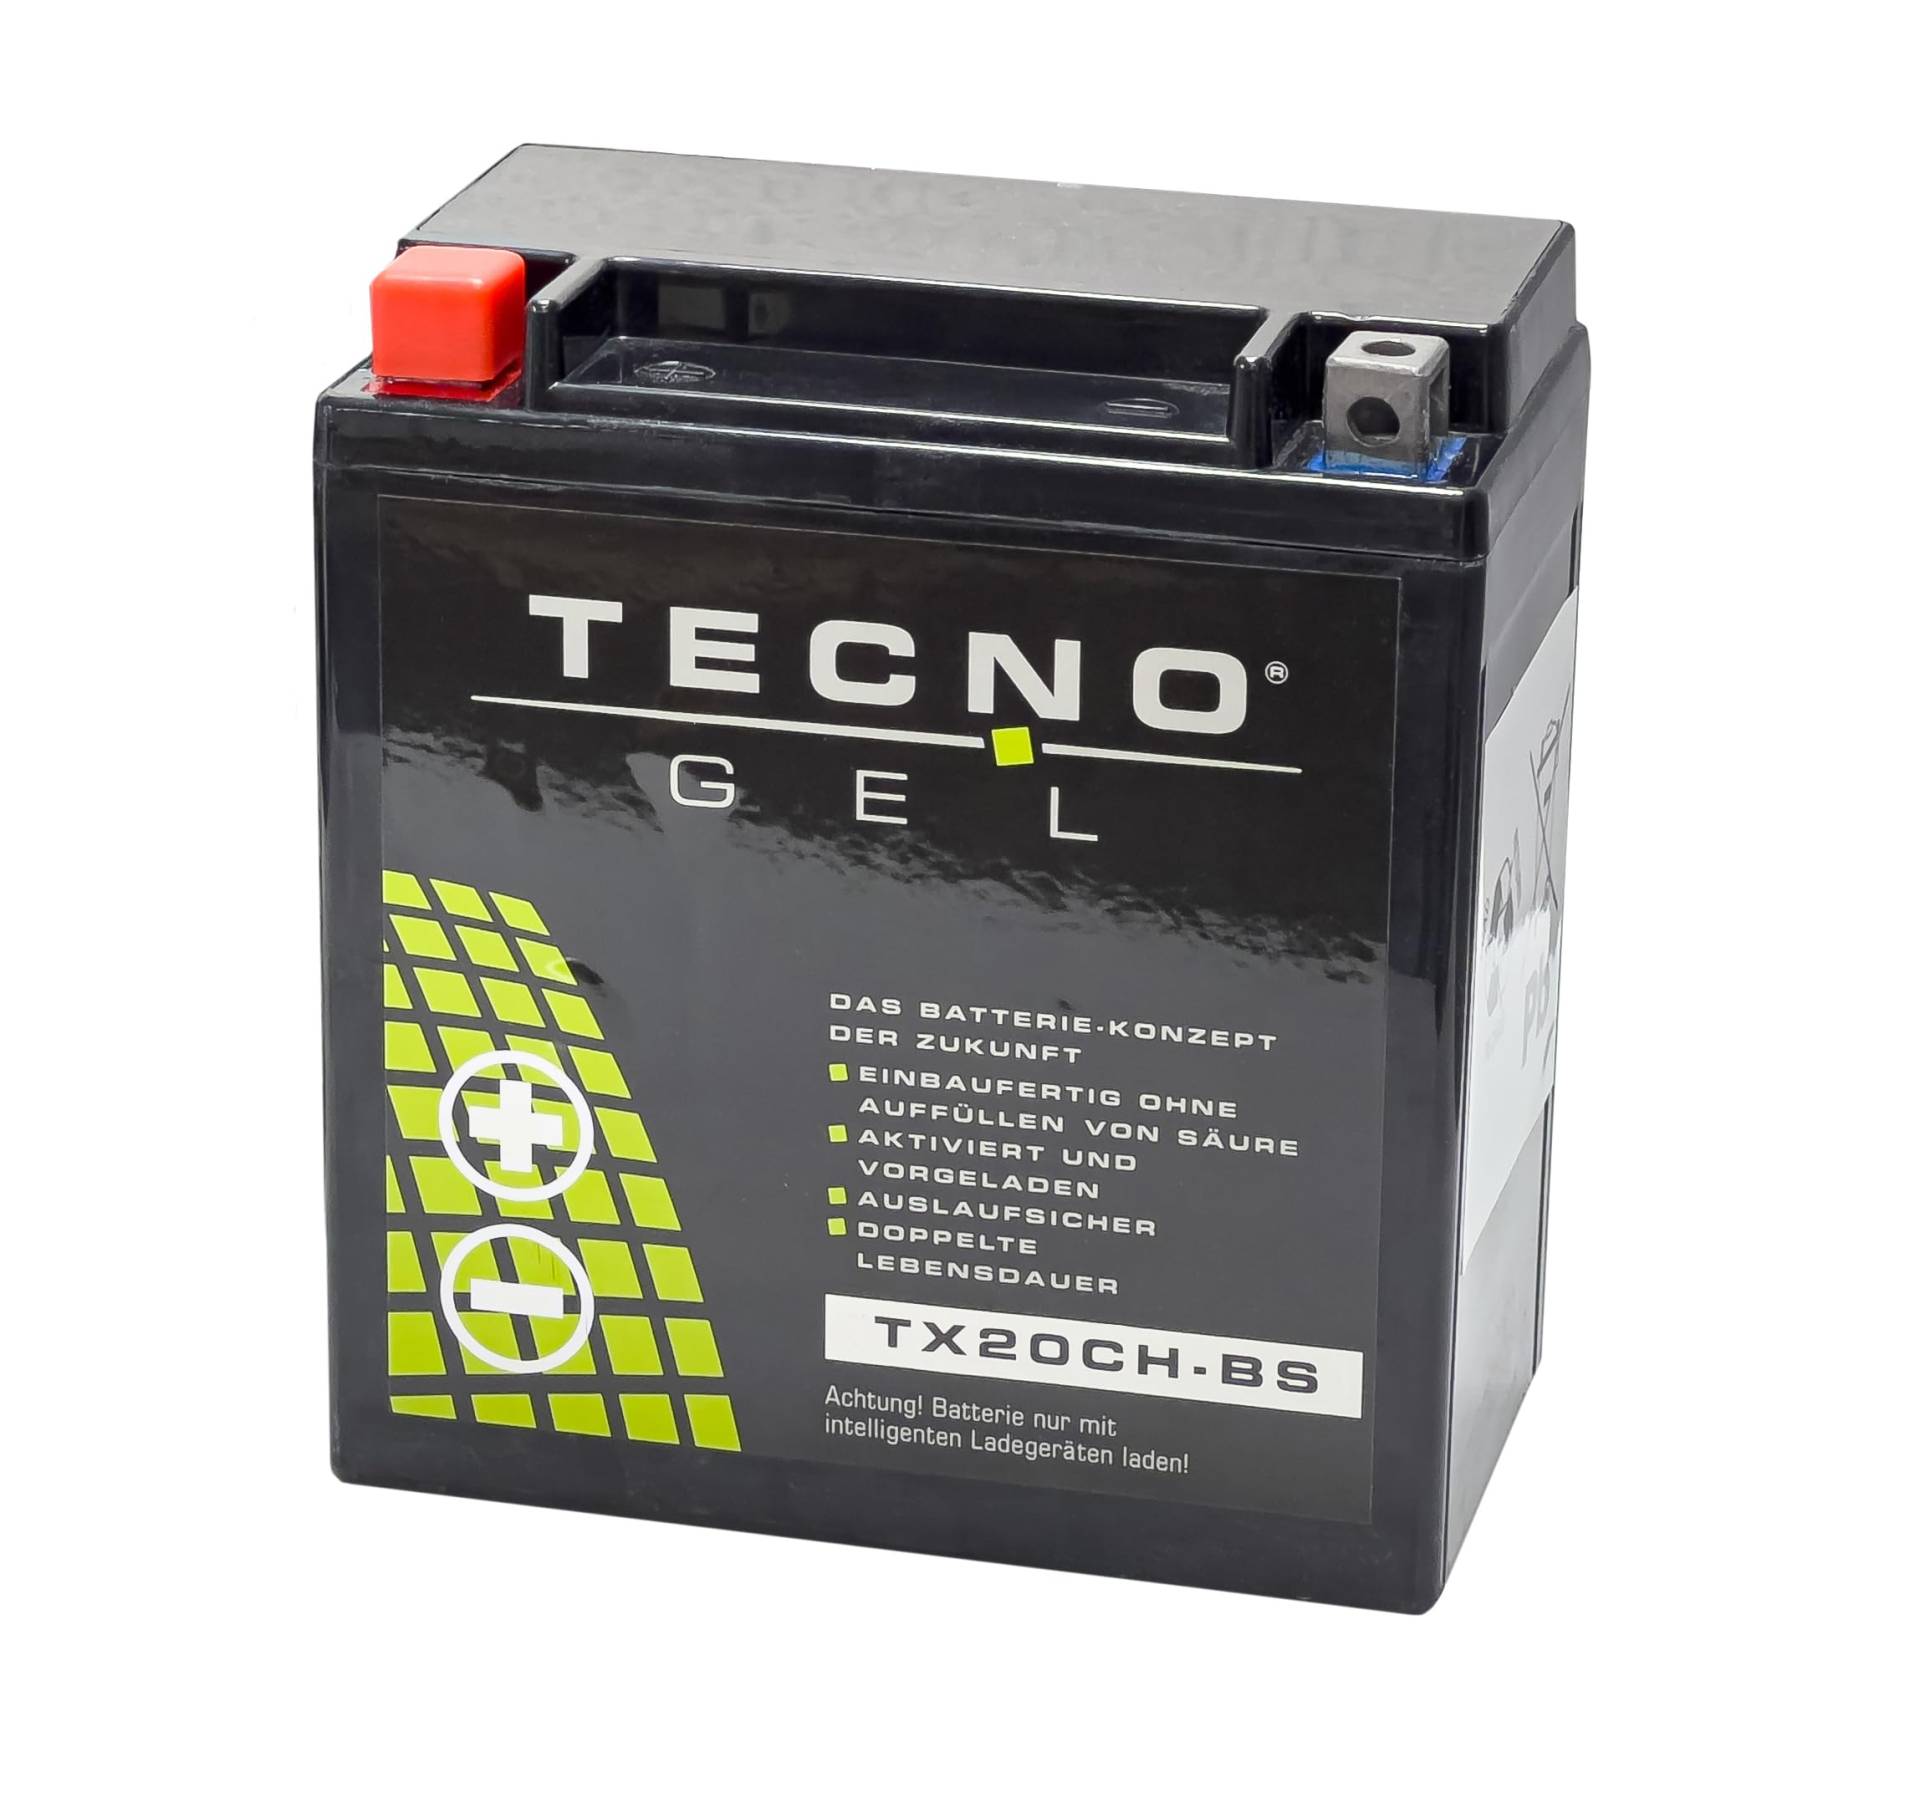 TECNO-GEL Motorrad-Batterie für YTX20CH-BS für MOTO MORINI Corsaro 1200 div. 2007-2013, 12V Gel-Batterie 18Ah, 150x87x161 mm von Wirth-Federn